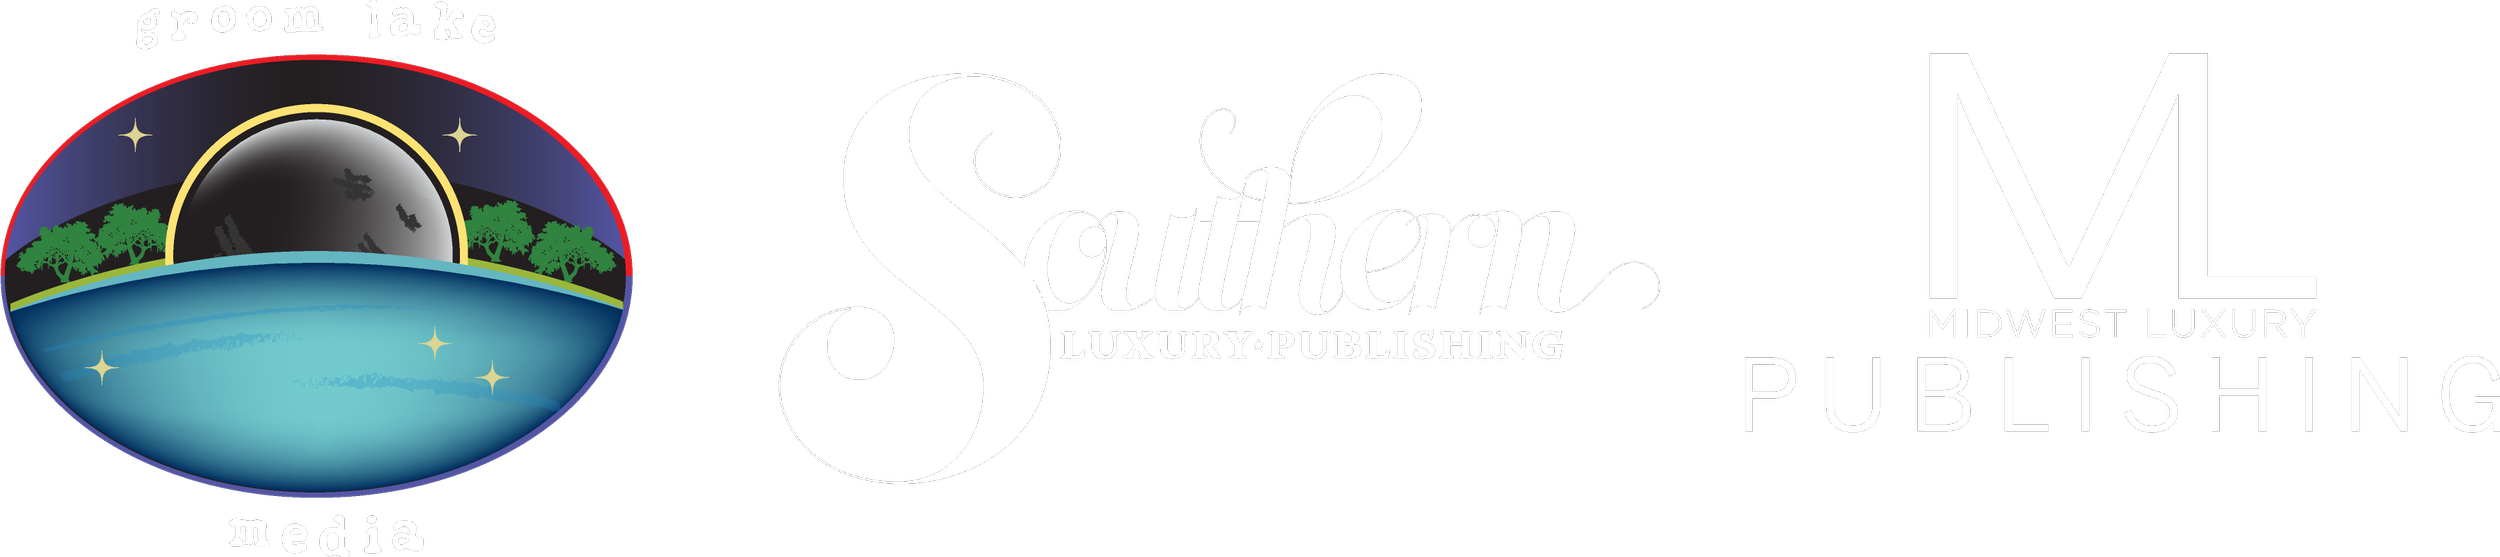 Midwest Luxury Publishing